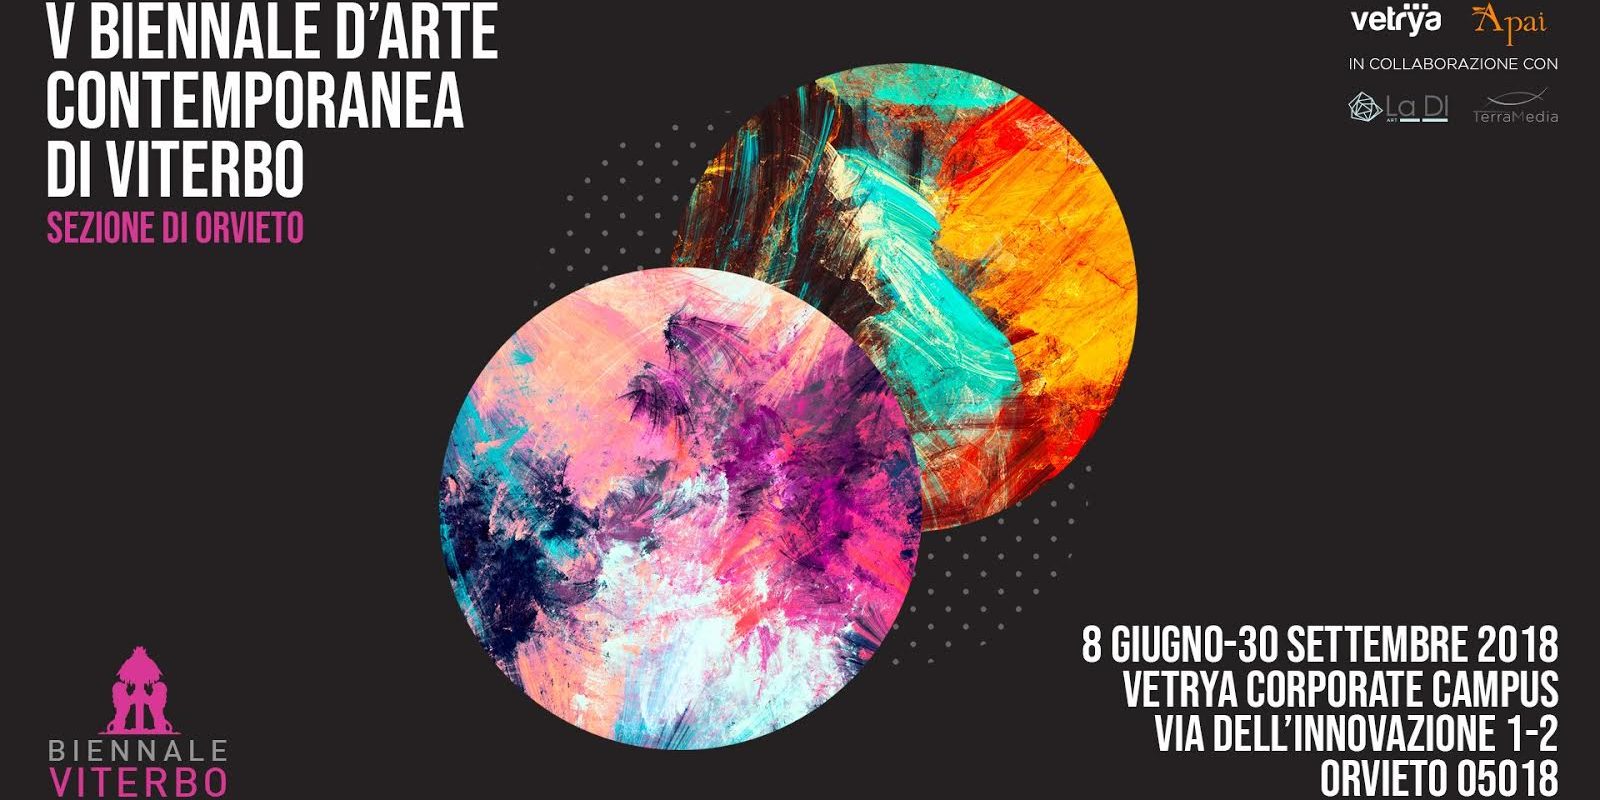 V Biennale d’Arte Contemporanea di Viterbo – sezione di Orvieto